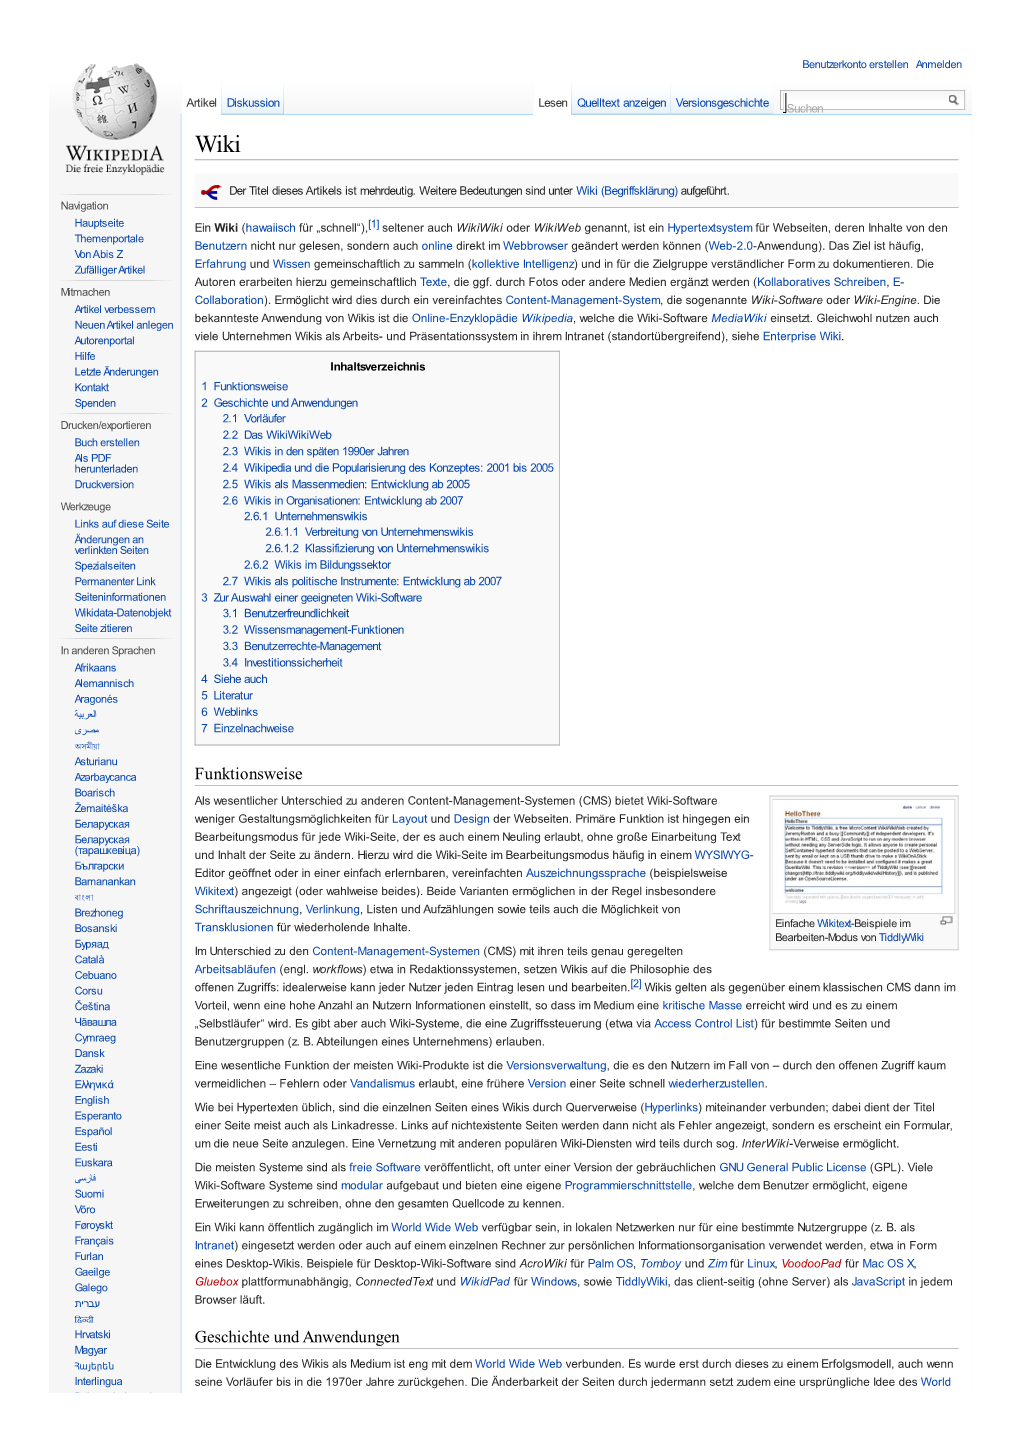 Wikipedia, Welche Die Wiki-Software Mediawiki Einsetzt